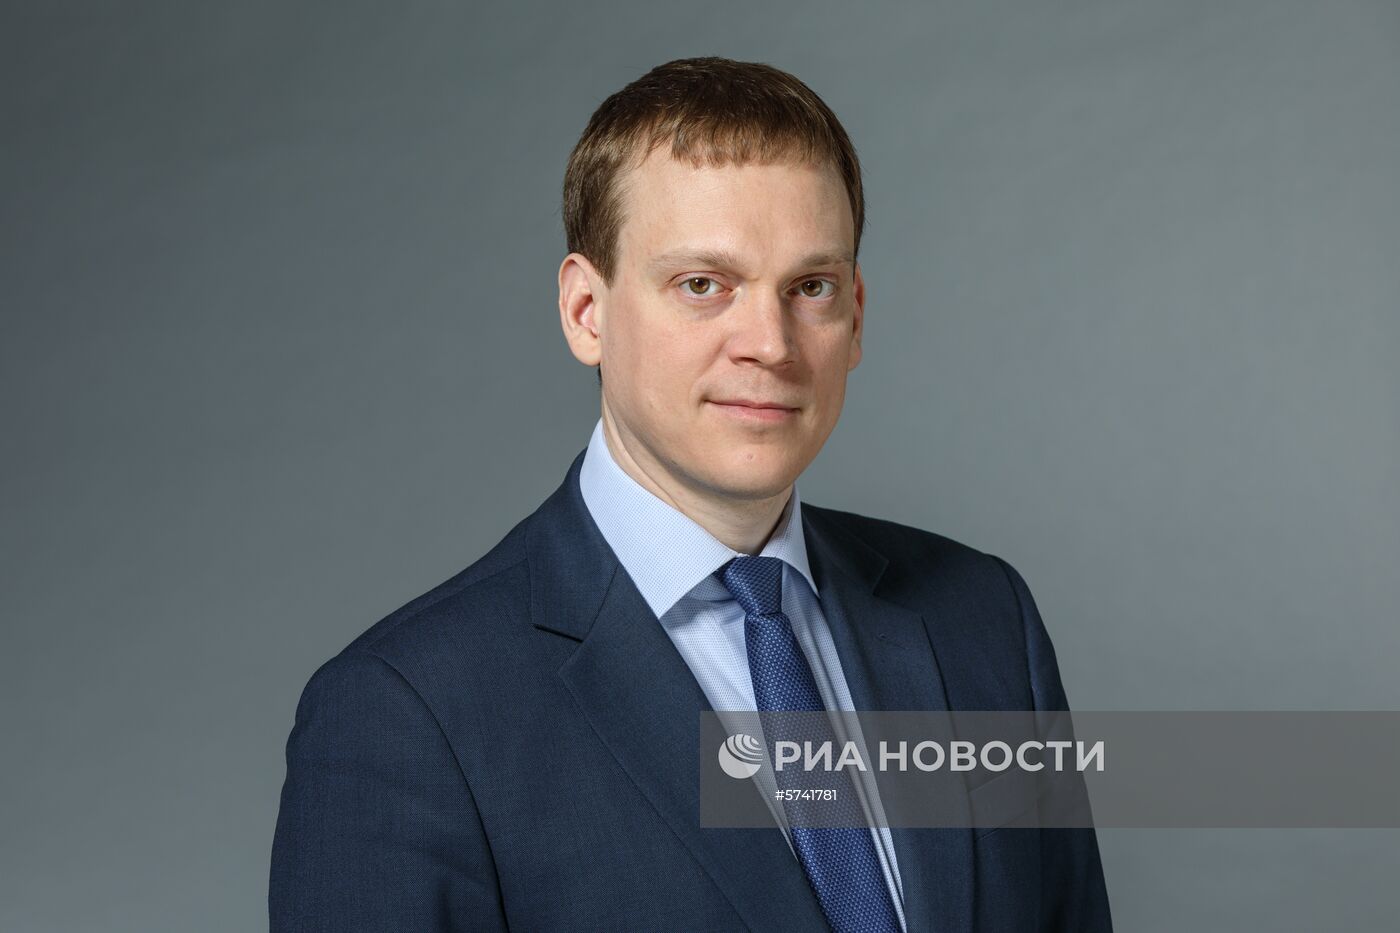 Новый руководитель Росстата Павел Малков